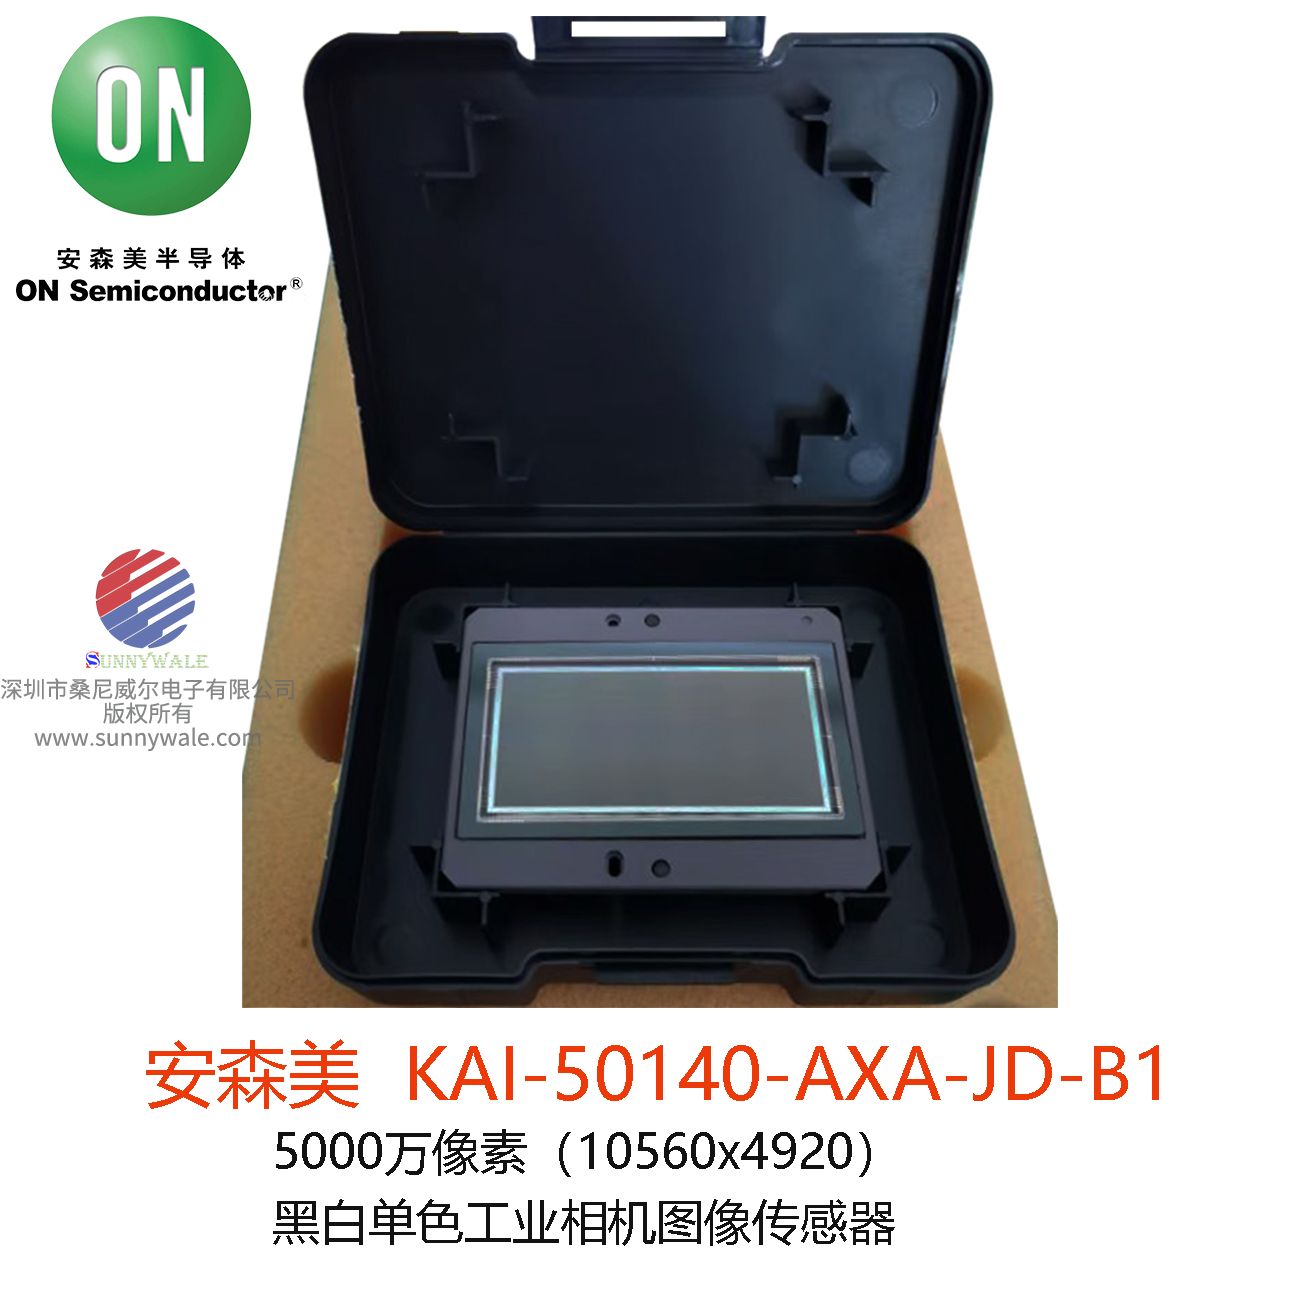 KAI-50140-AXA-JD-B1